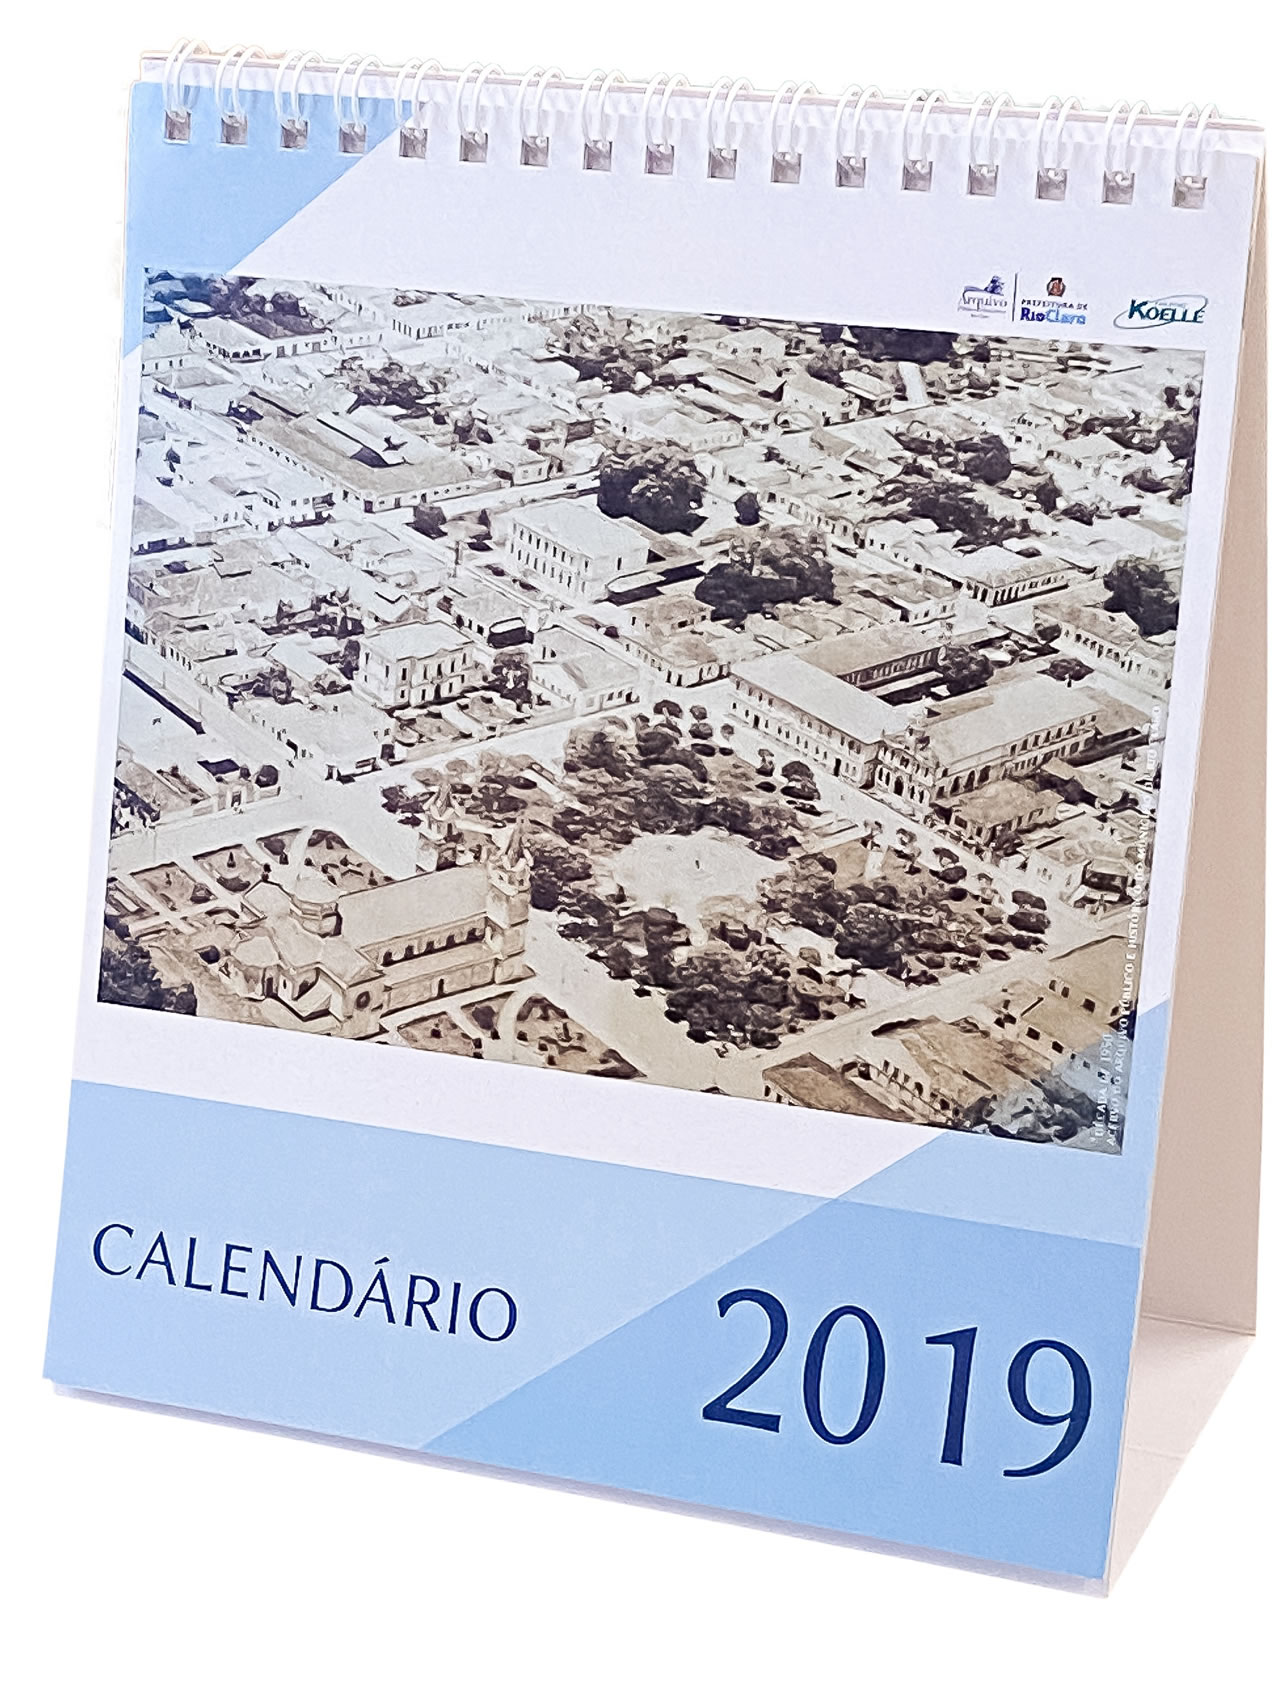 Calendário rio-clarense 2019